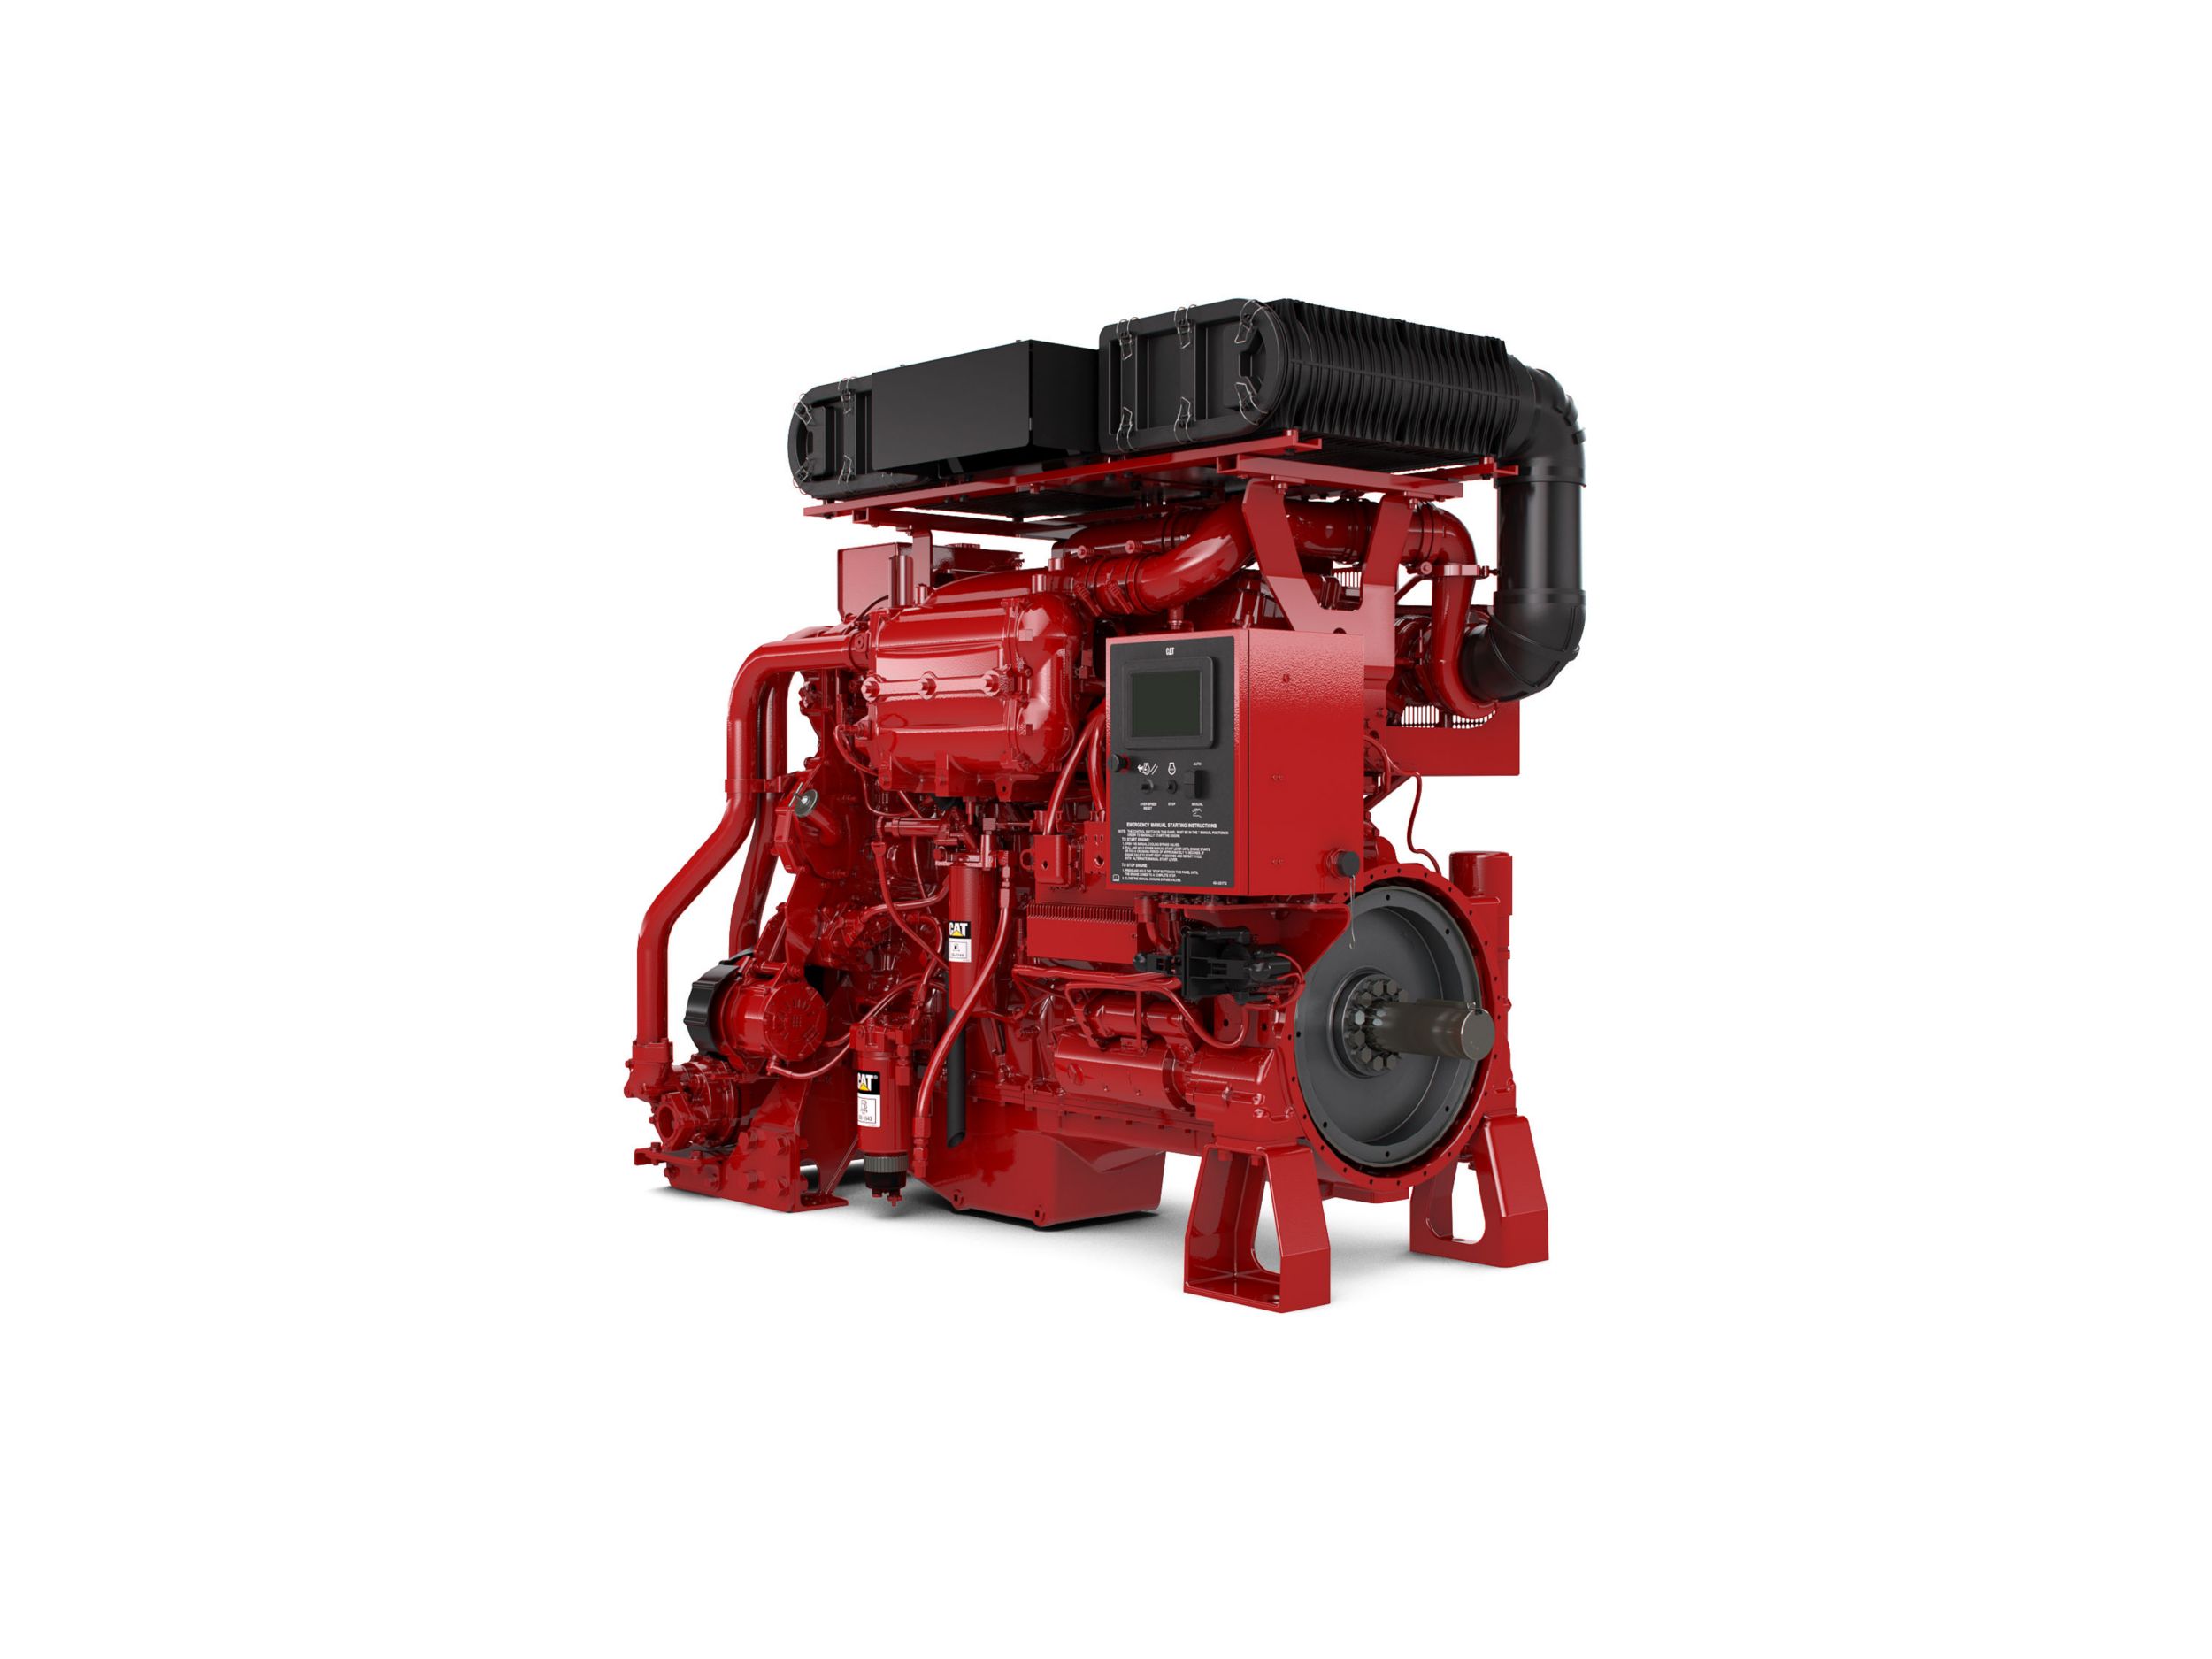 Pompa Pemadam Kebakaran Diesel Pompa Pemadam Kebakaran C18 - Tingkat Regulasi Rendah & Tinggi